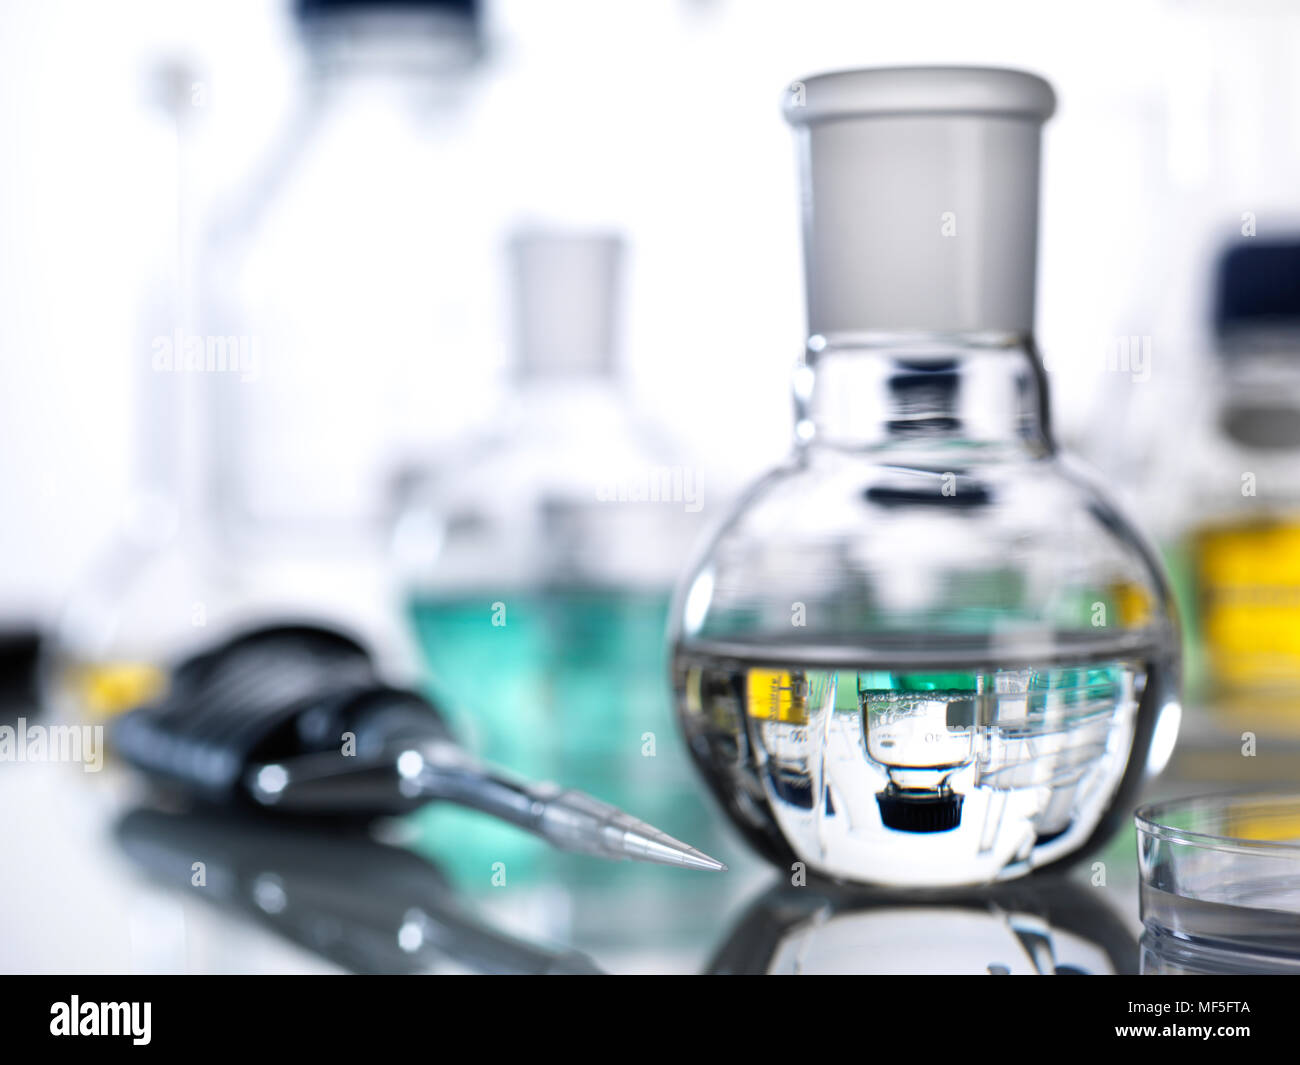 Pipette and laboratory glassware Stock Photo